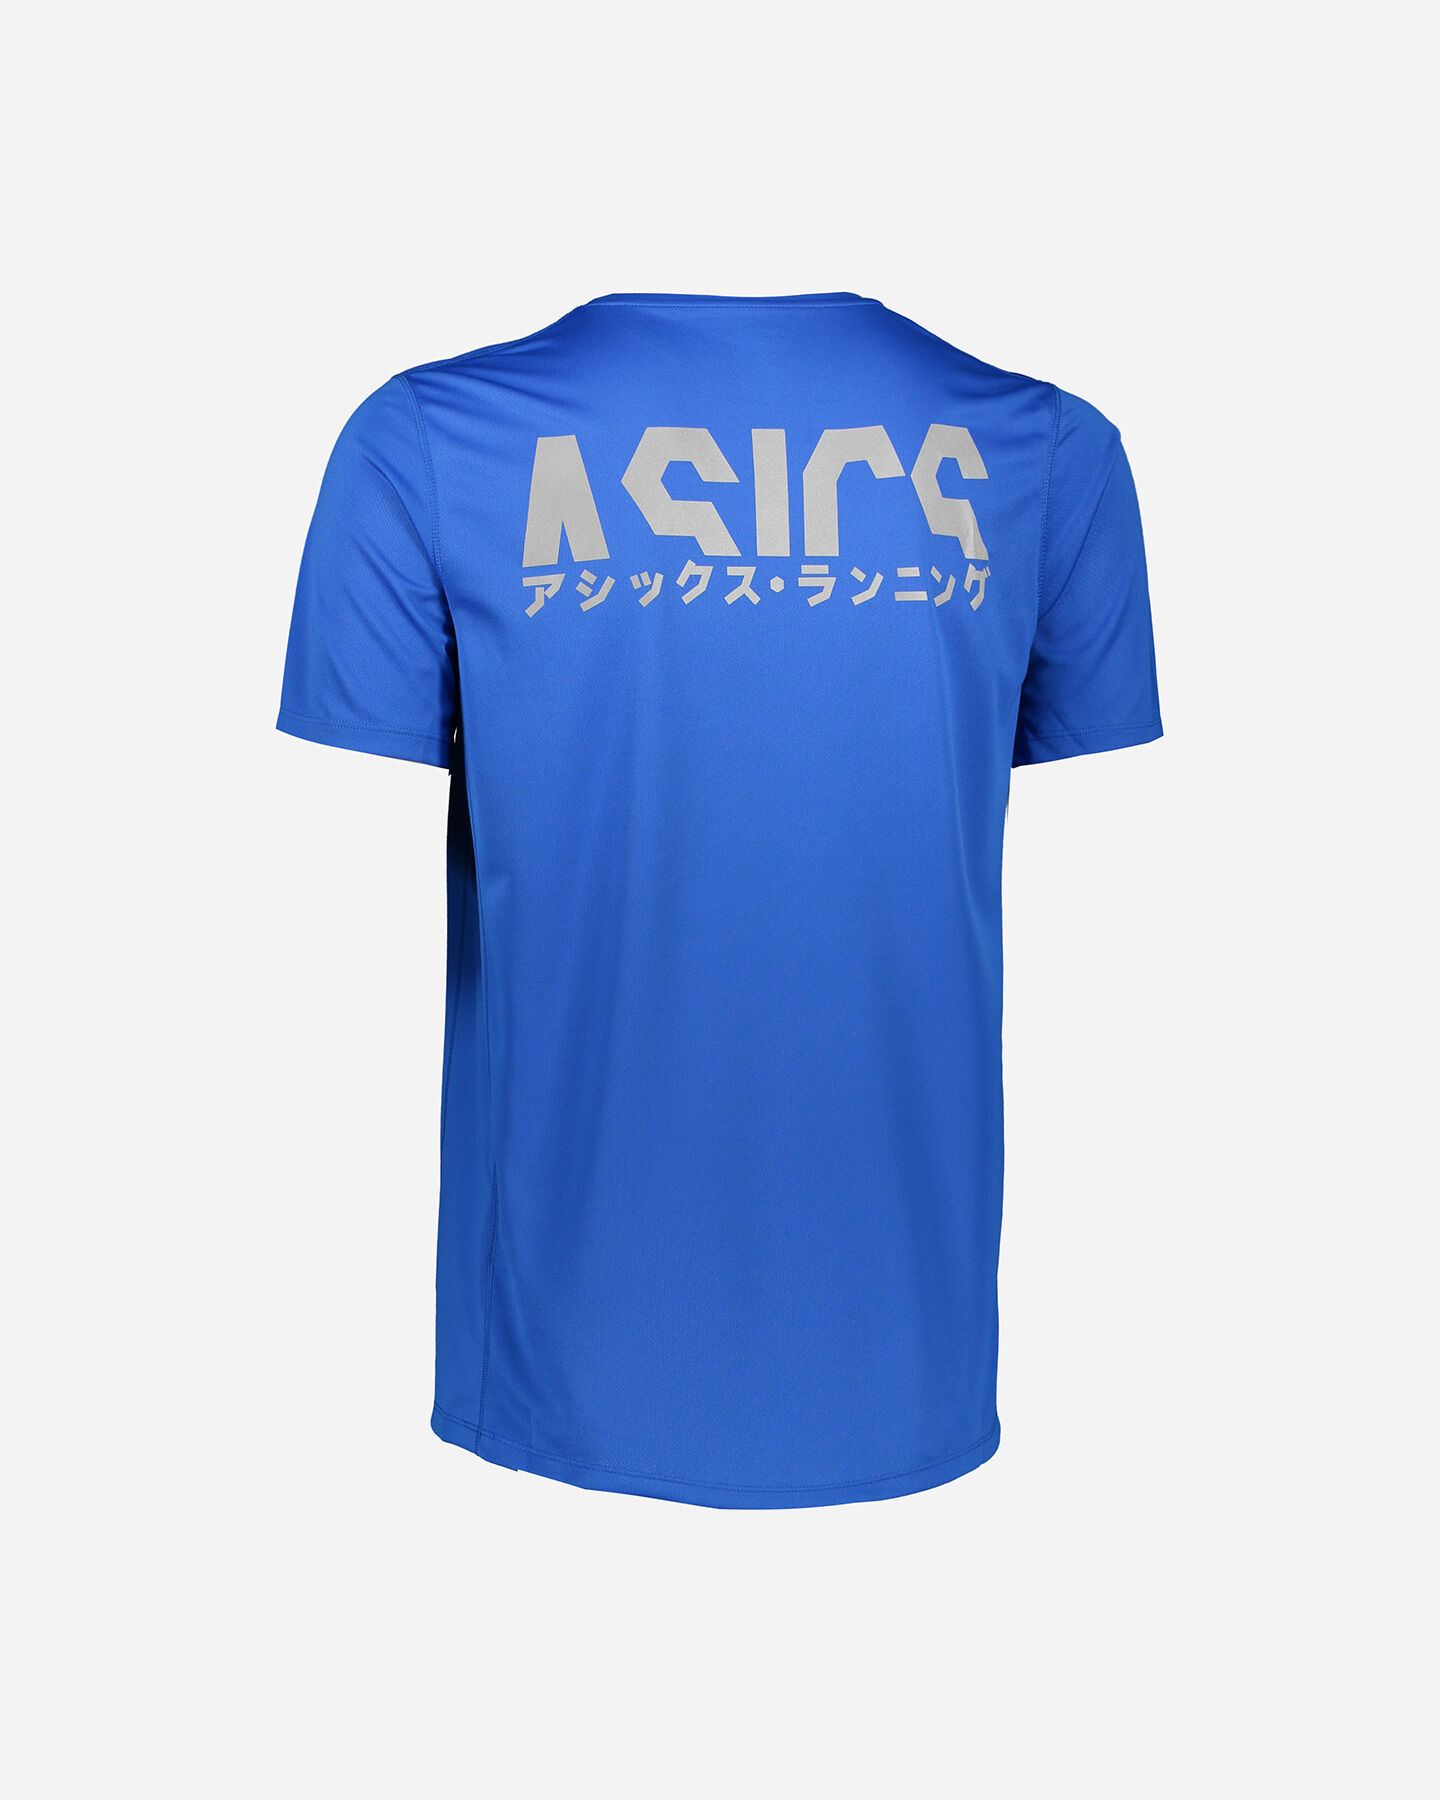  T-Shirt running ASICS KATAKANA M S5190685|401|S scatto 1